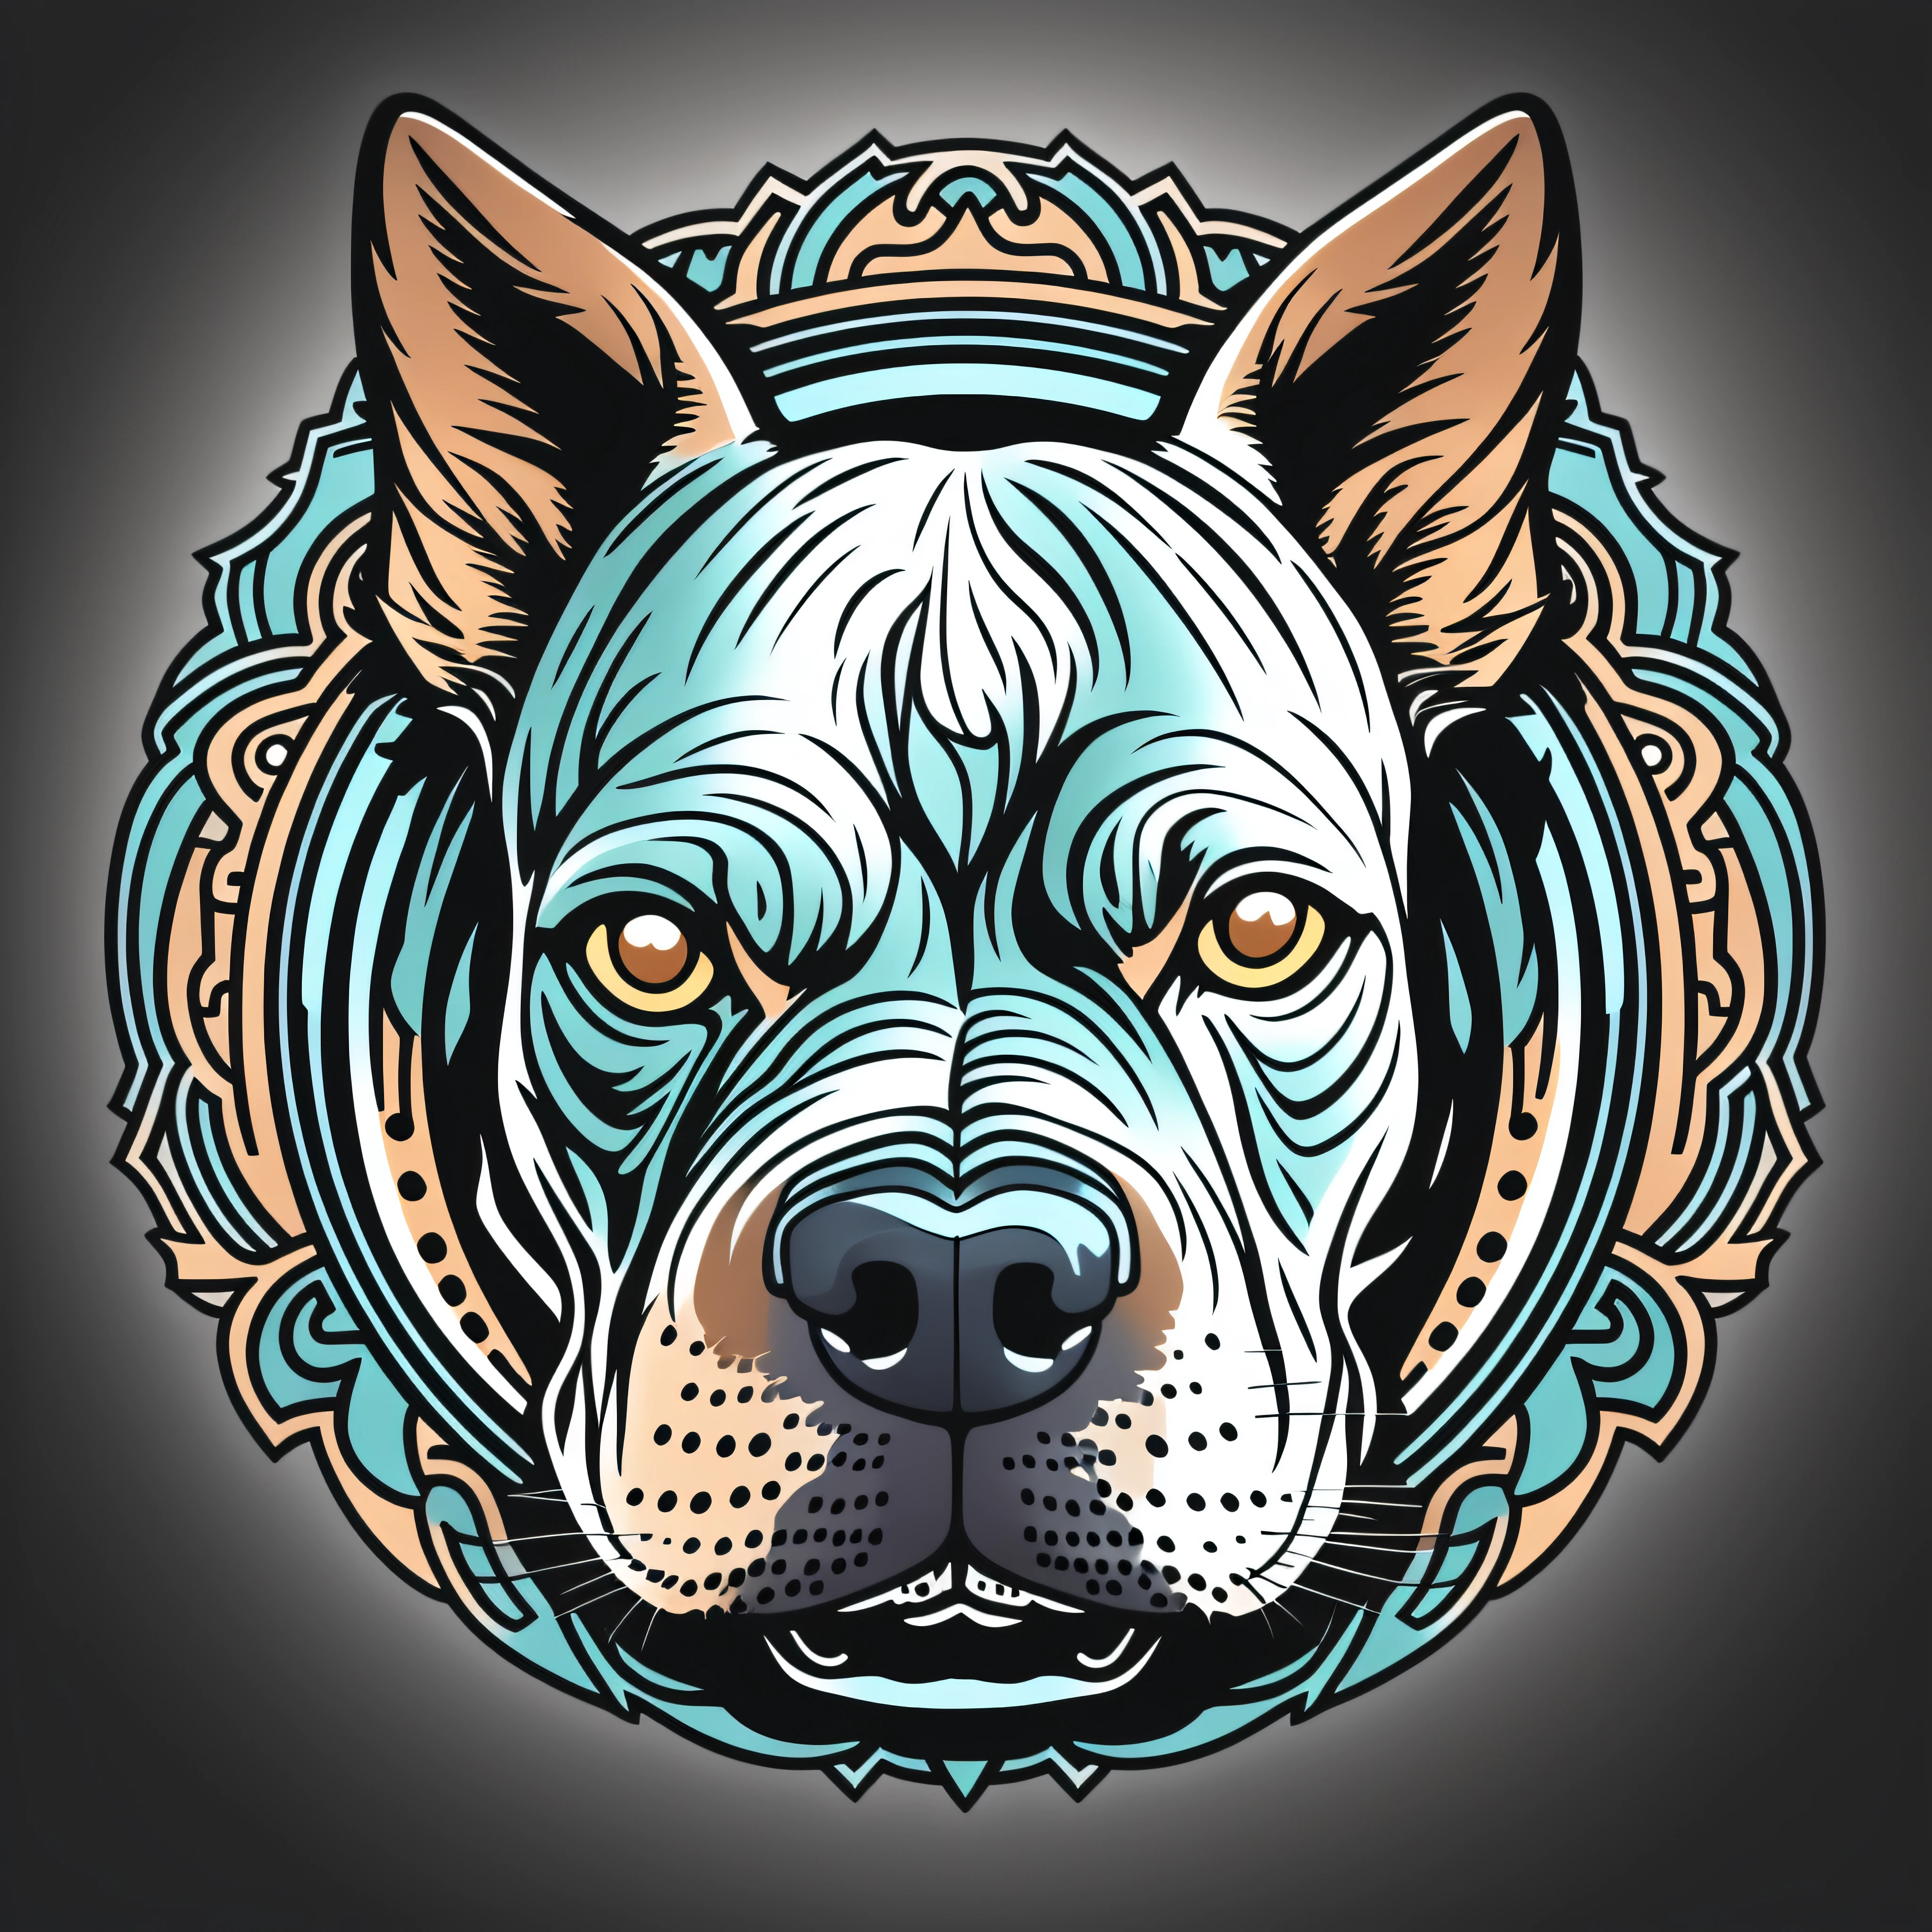 令人惊叹的斗牛犬头标志, 12k, 細節 .藍眼睛.带有圆形轮廓, 看起来像贴纸, 维克多·阿特 卡通艺术, 插画标志